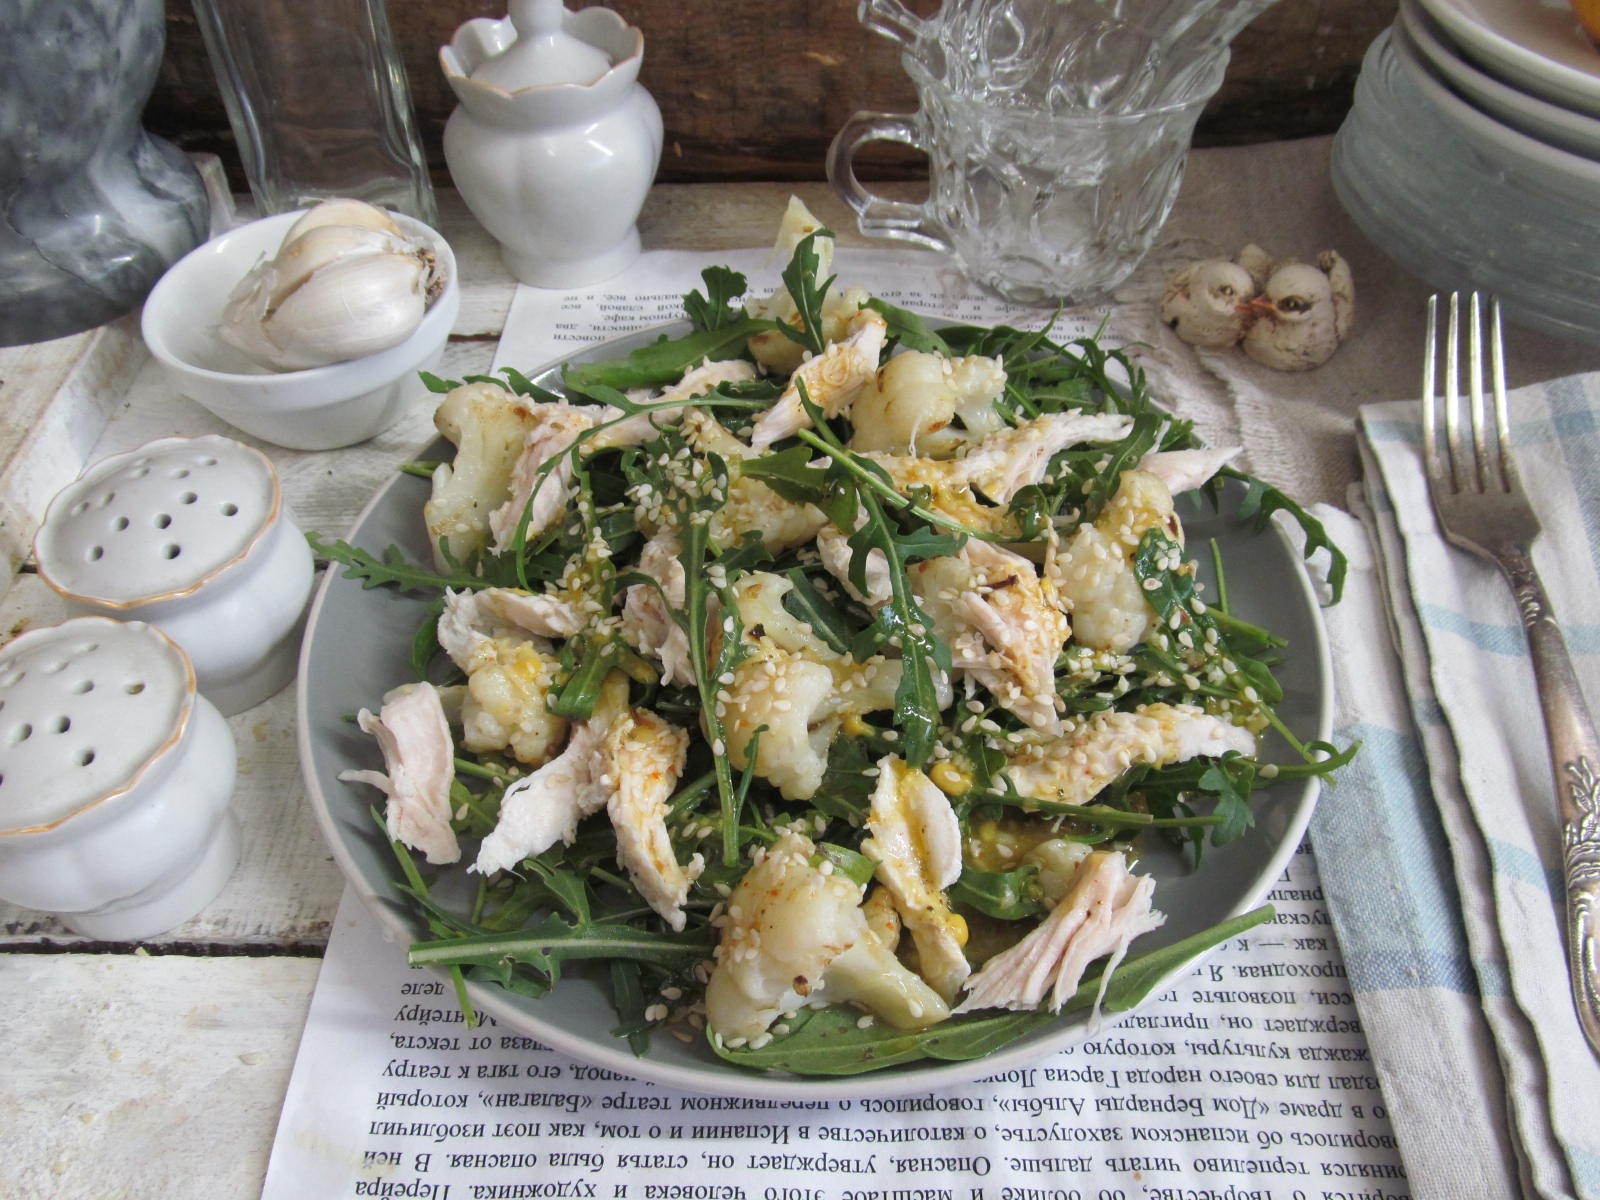 Салат из цветной капусты - как приготовить, рецепт с фото по шагам, калорийность - l2luna.ru